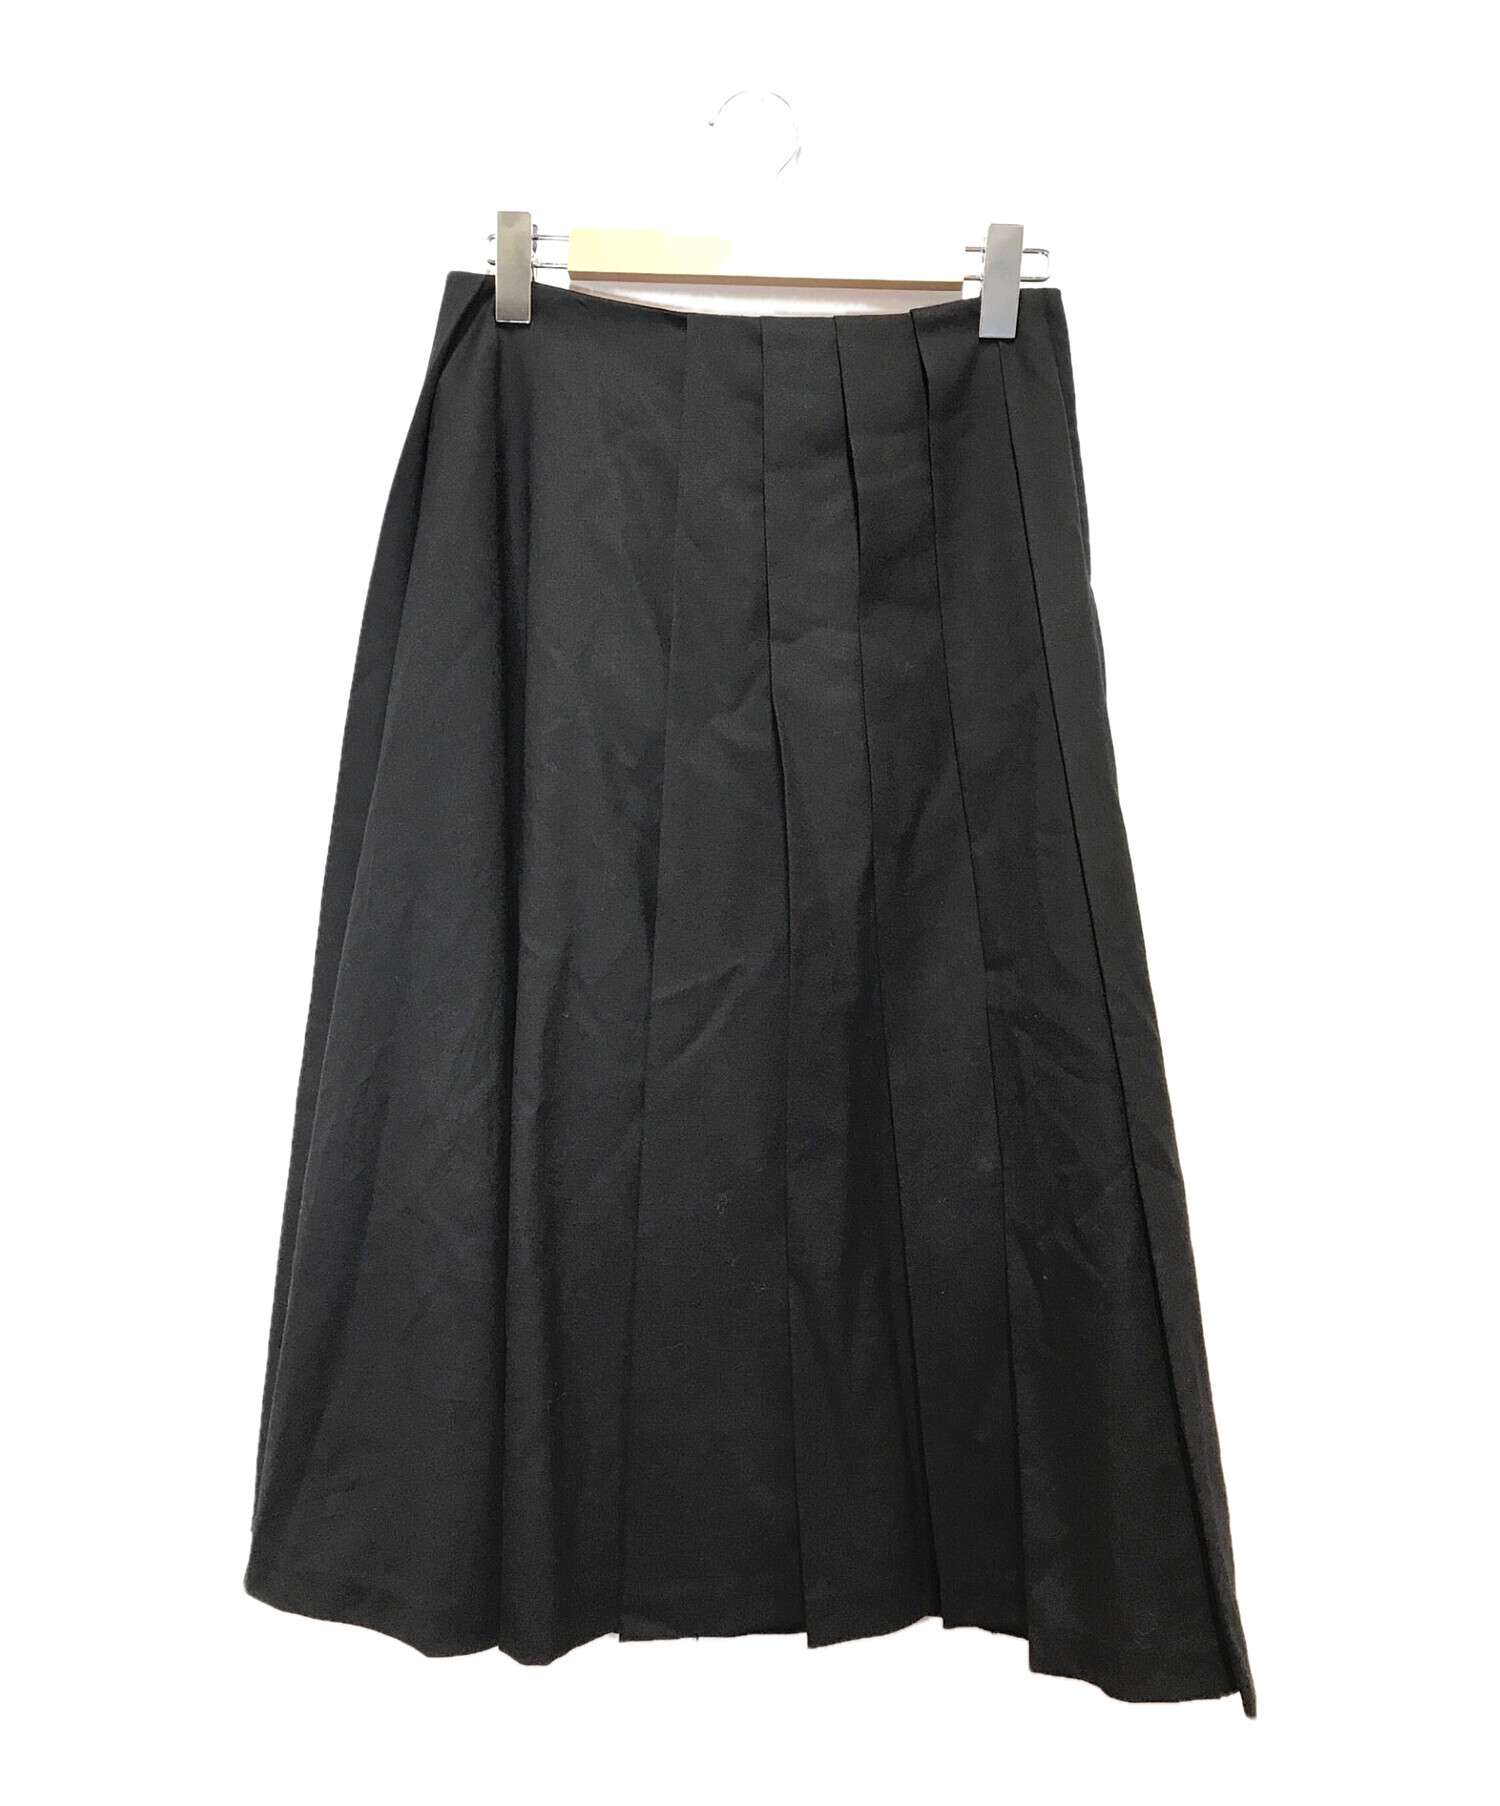 人気激安 (黒) スカート ninomiya kei noir - ひざ丈スカート